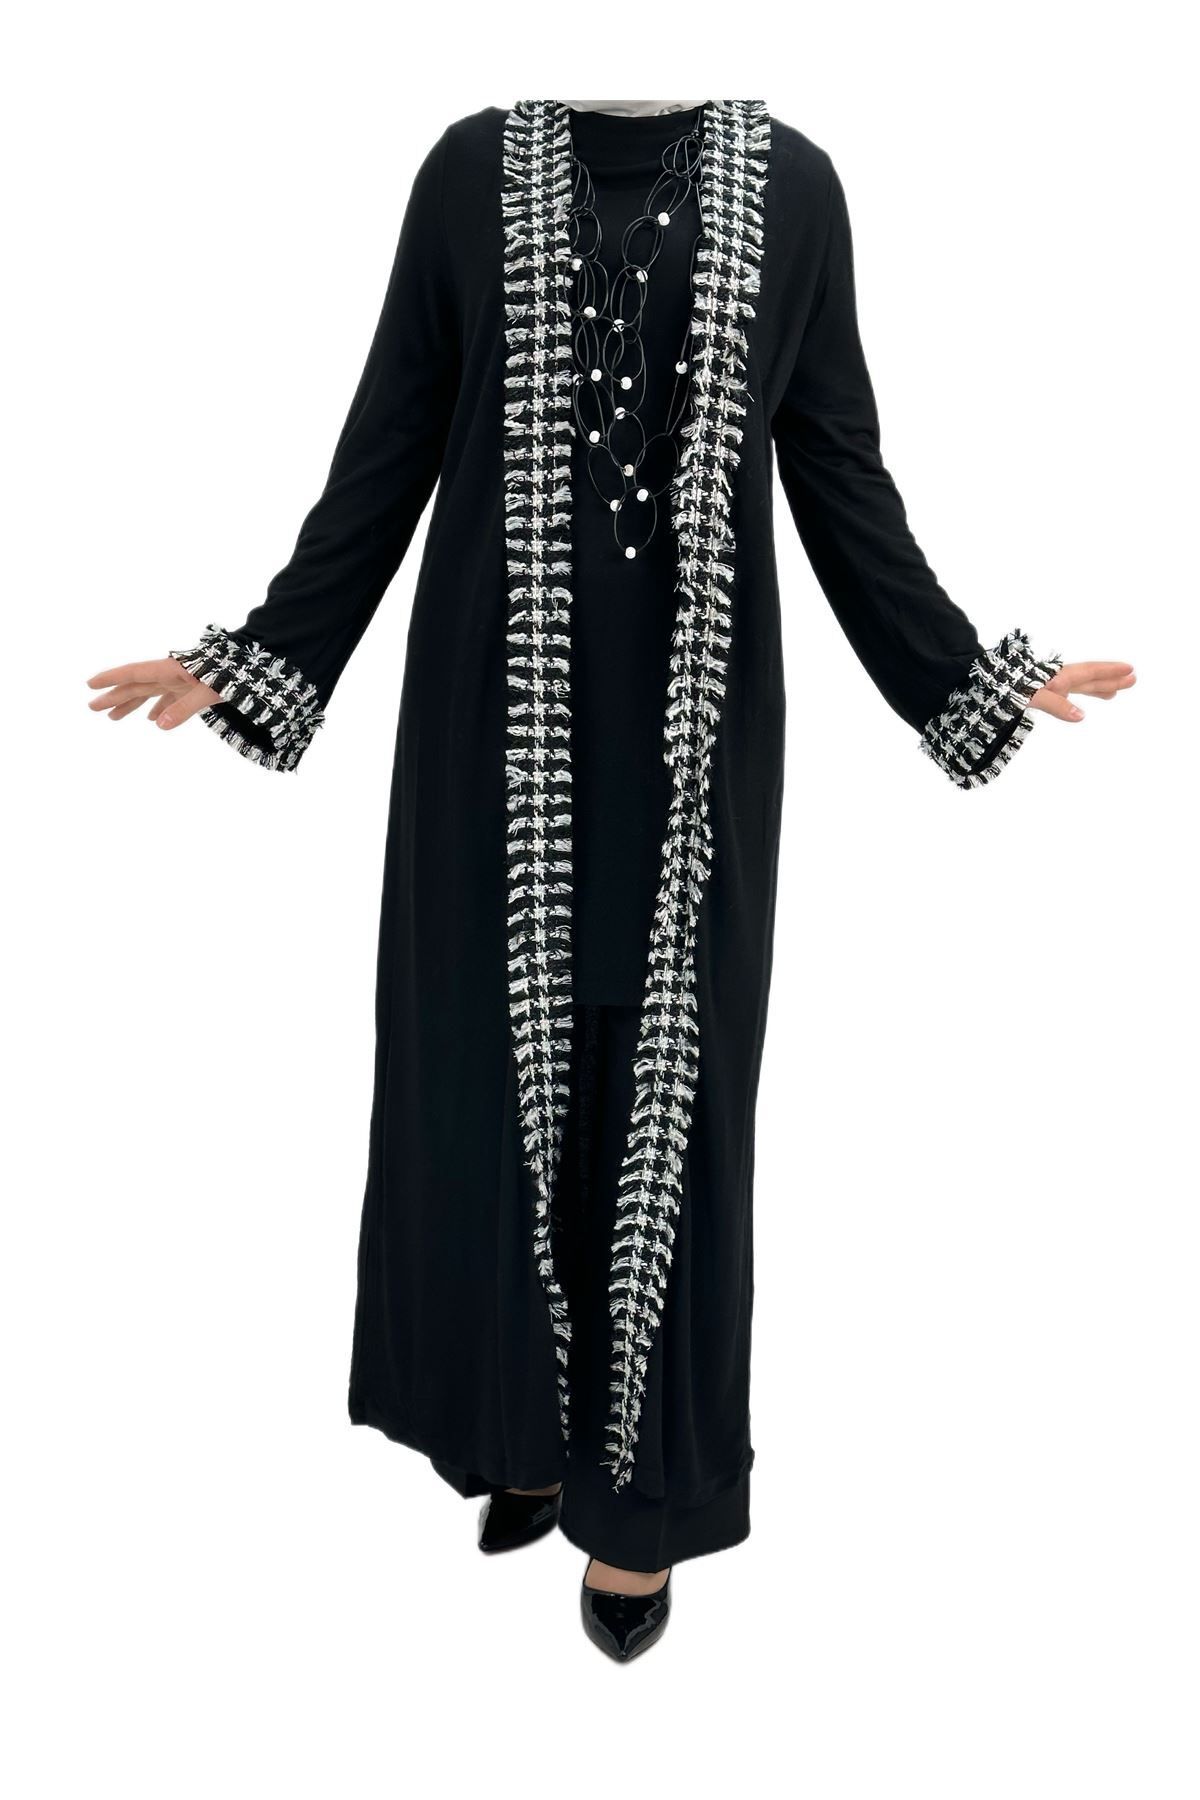 ottoman wear OTW39804 Uzun Kimonolu İçlikli Takım Siyah